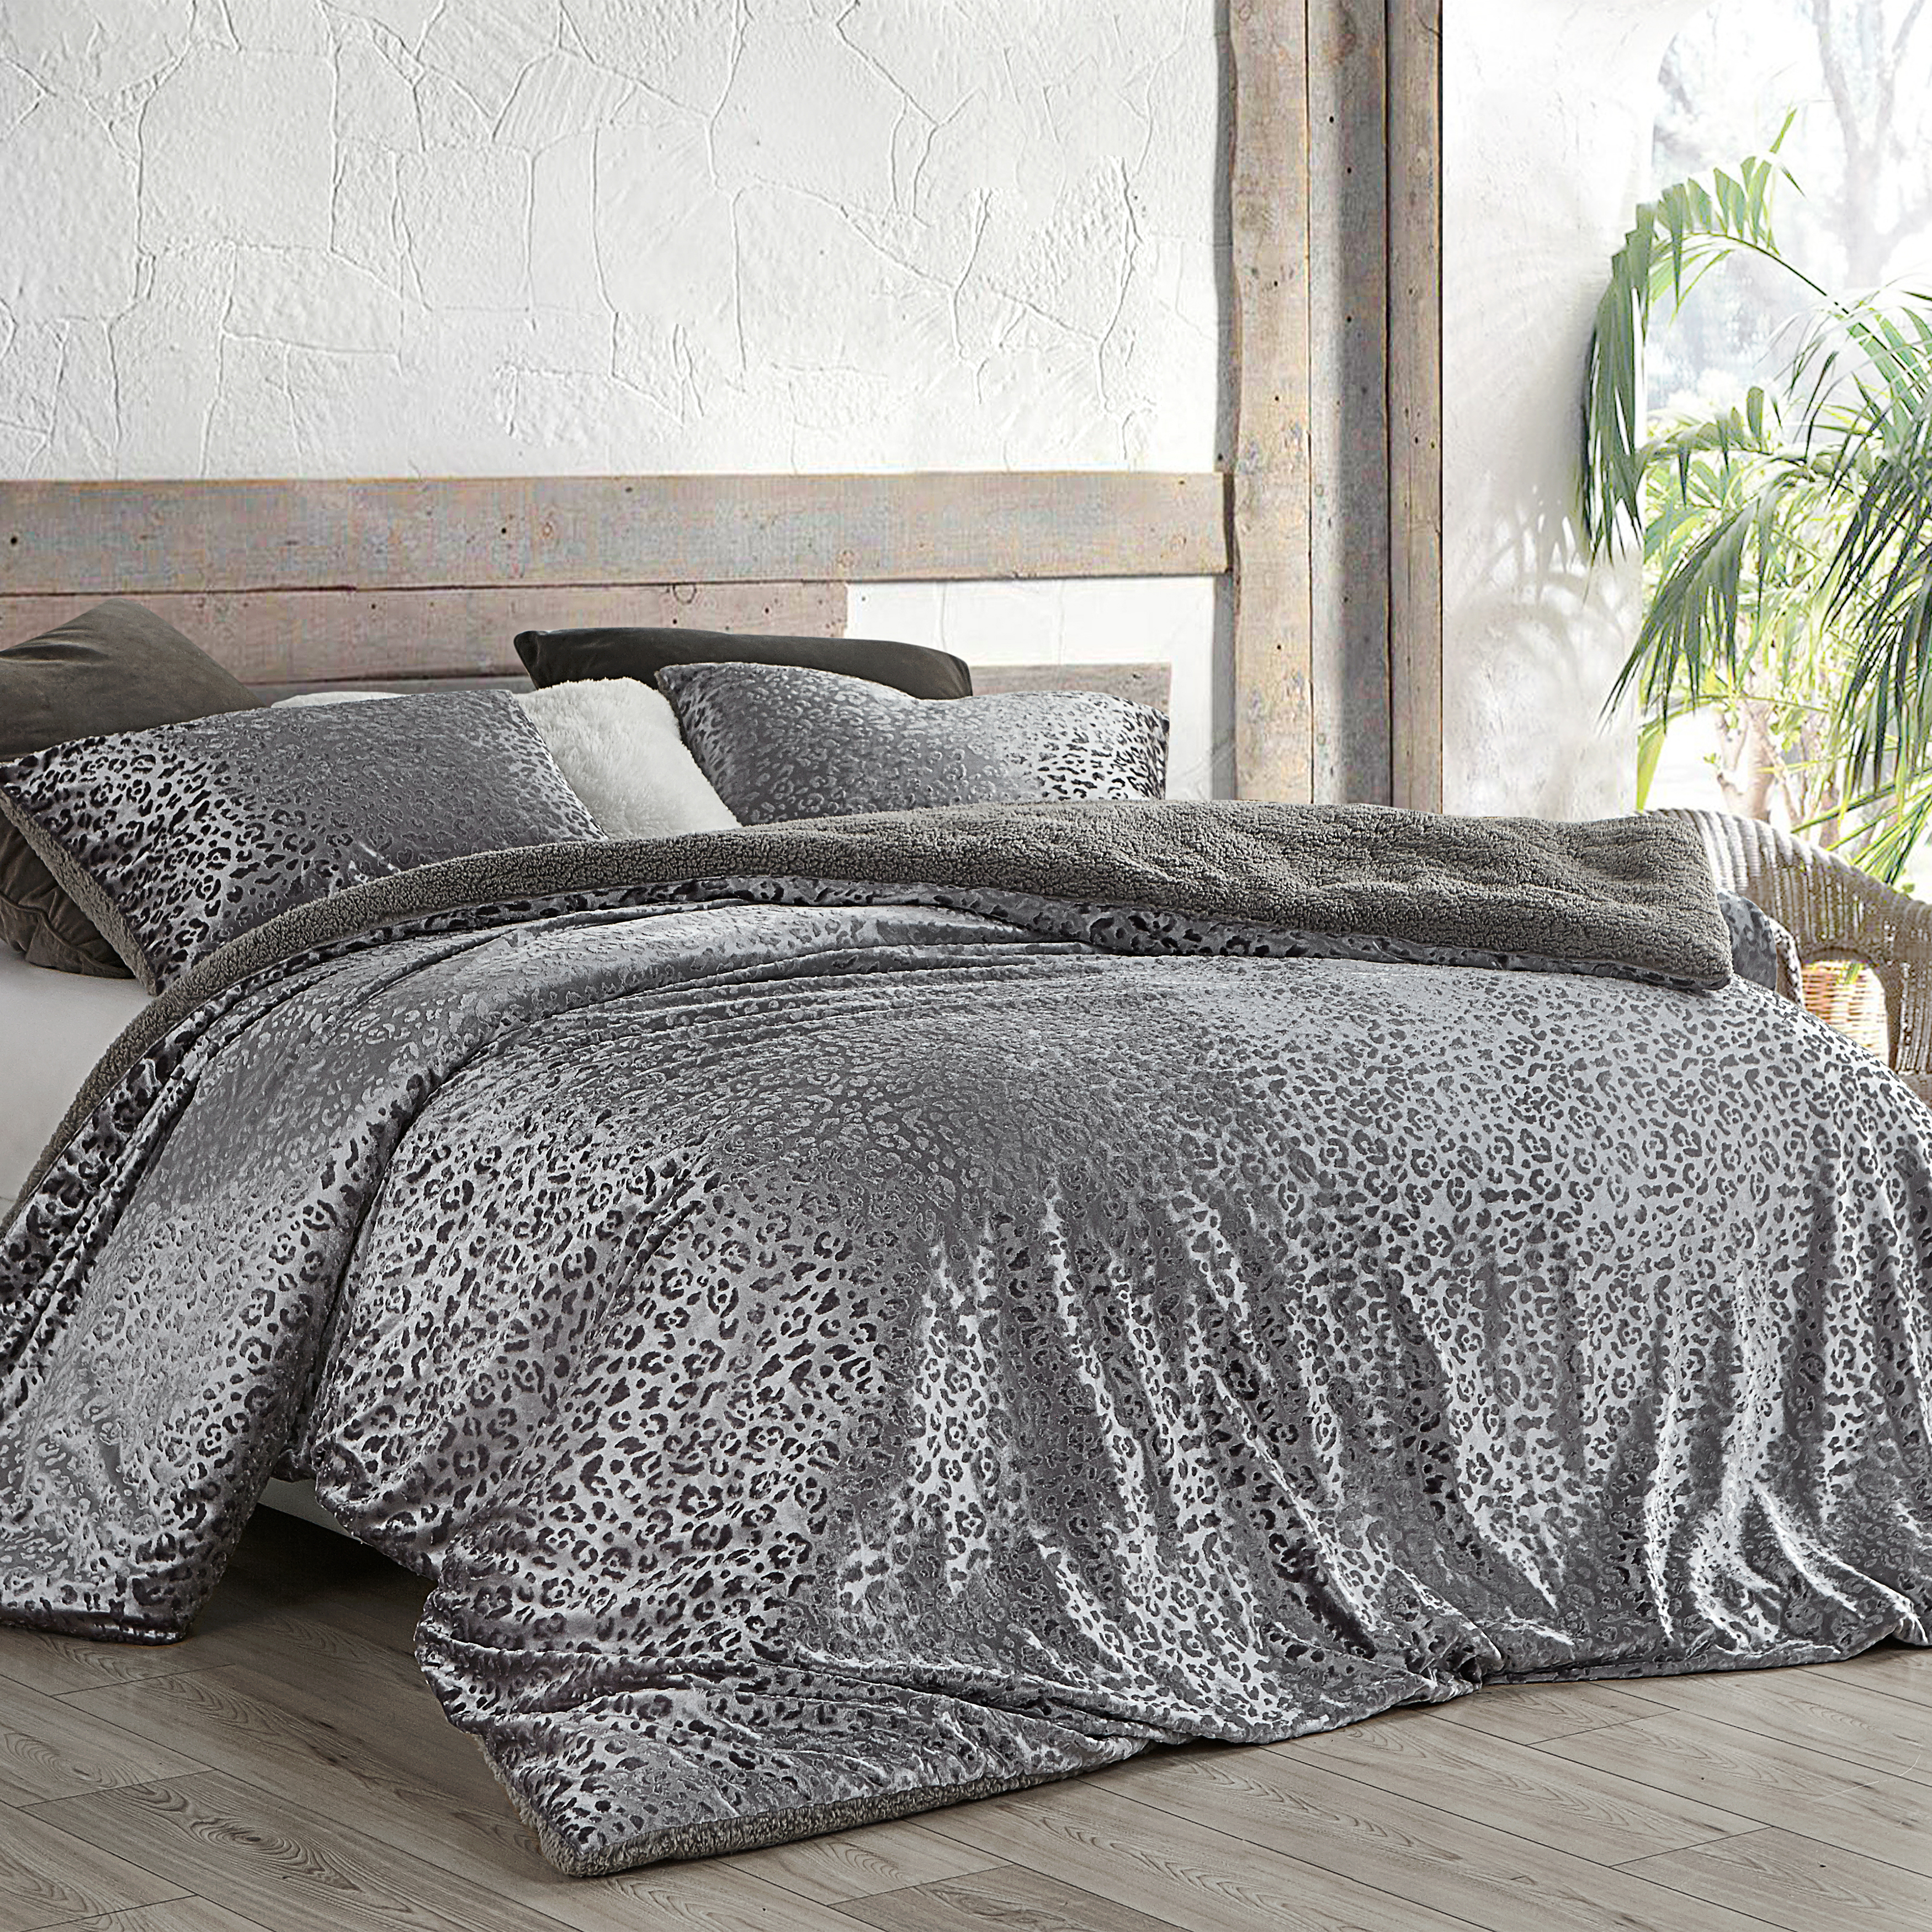 Primal Leopard - Coma Inducer® Oversized Comforter - Silver Black